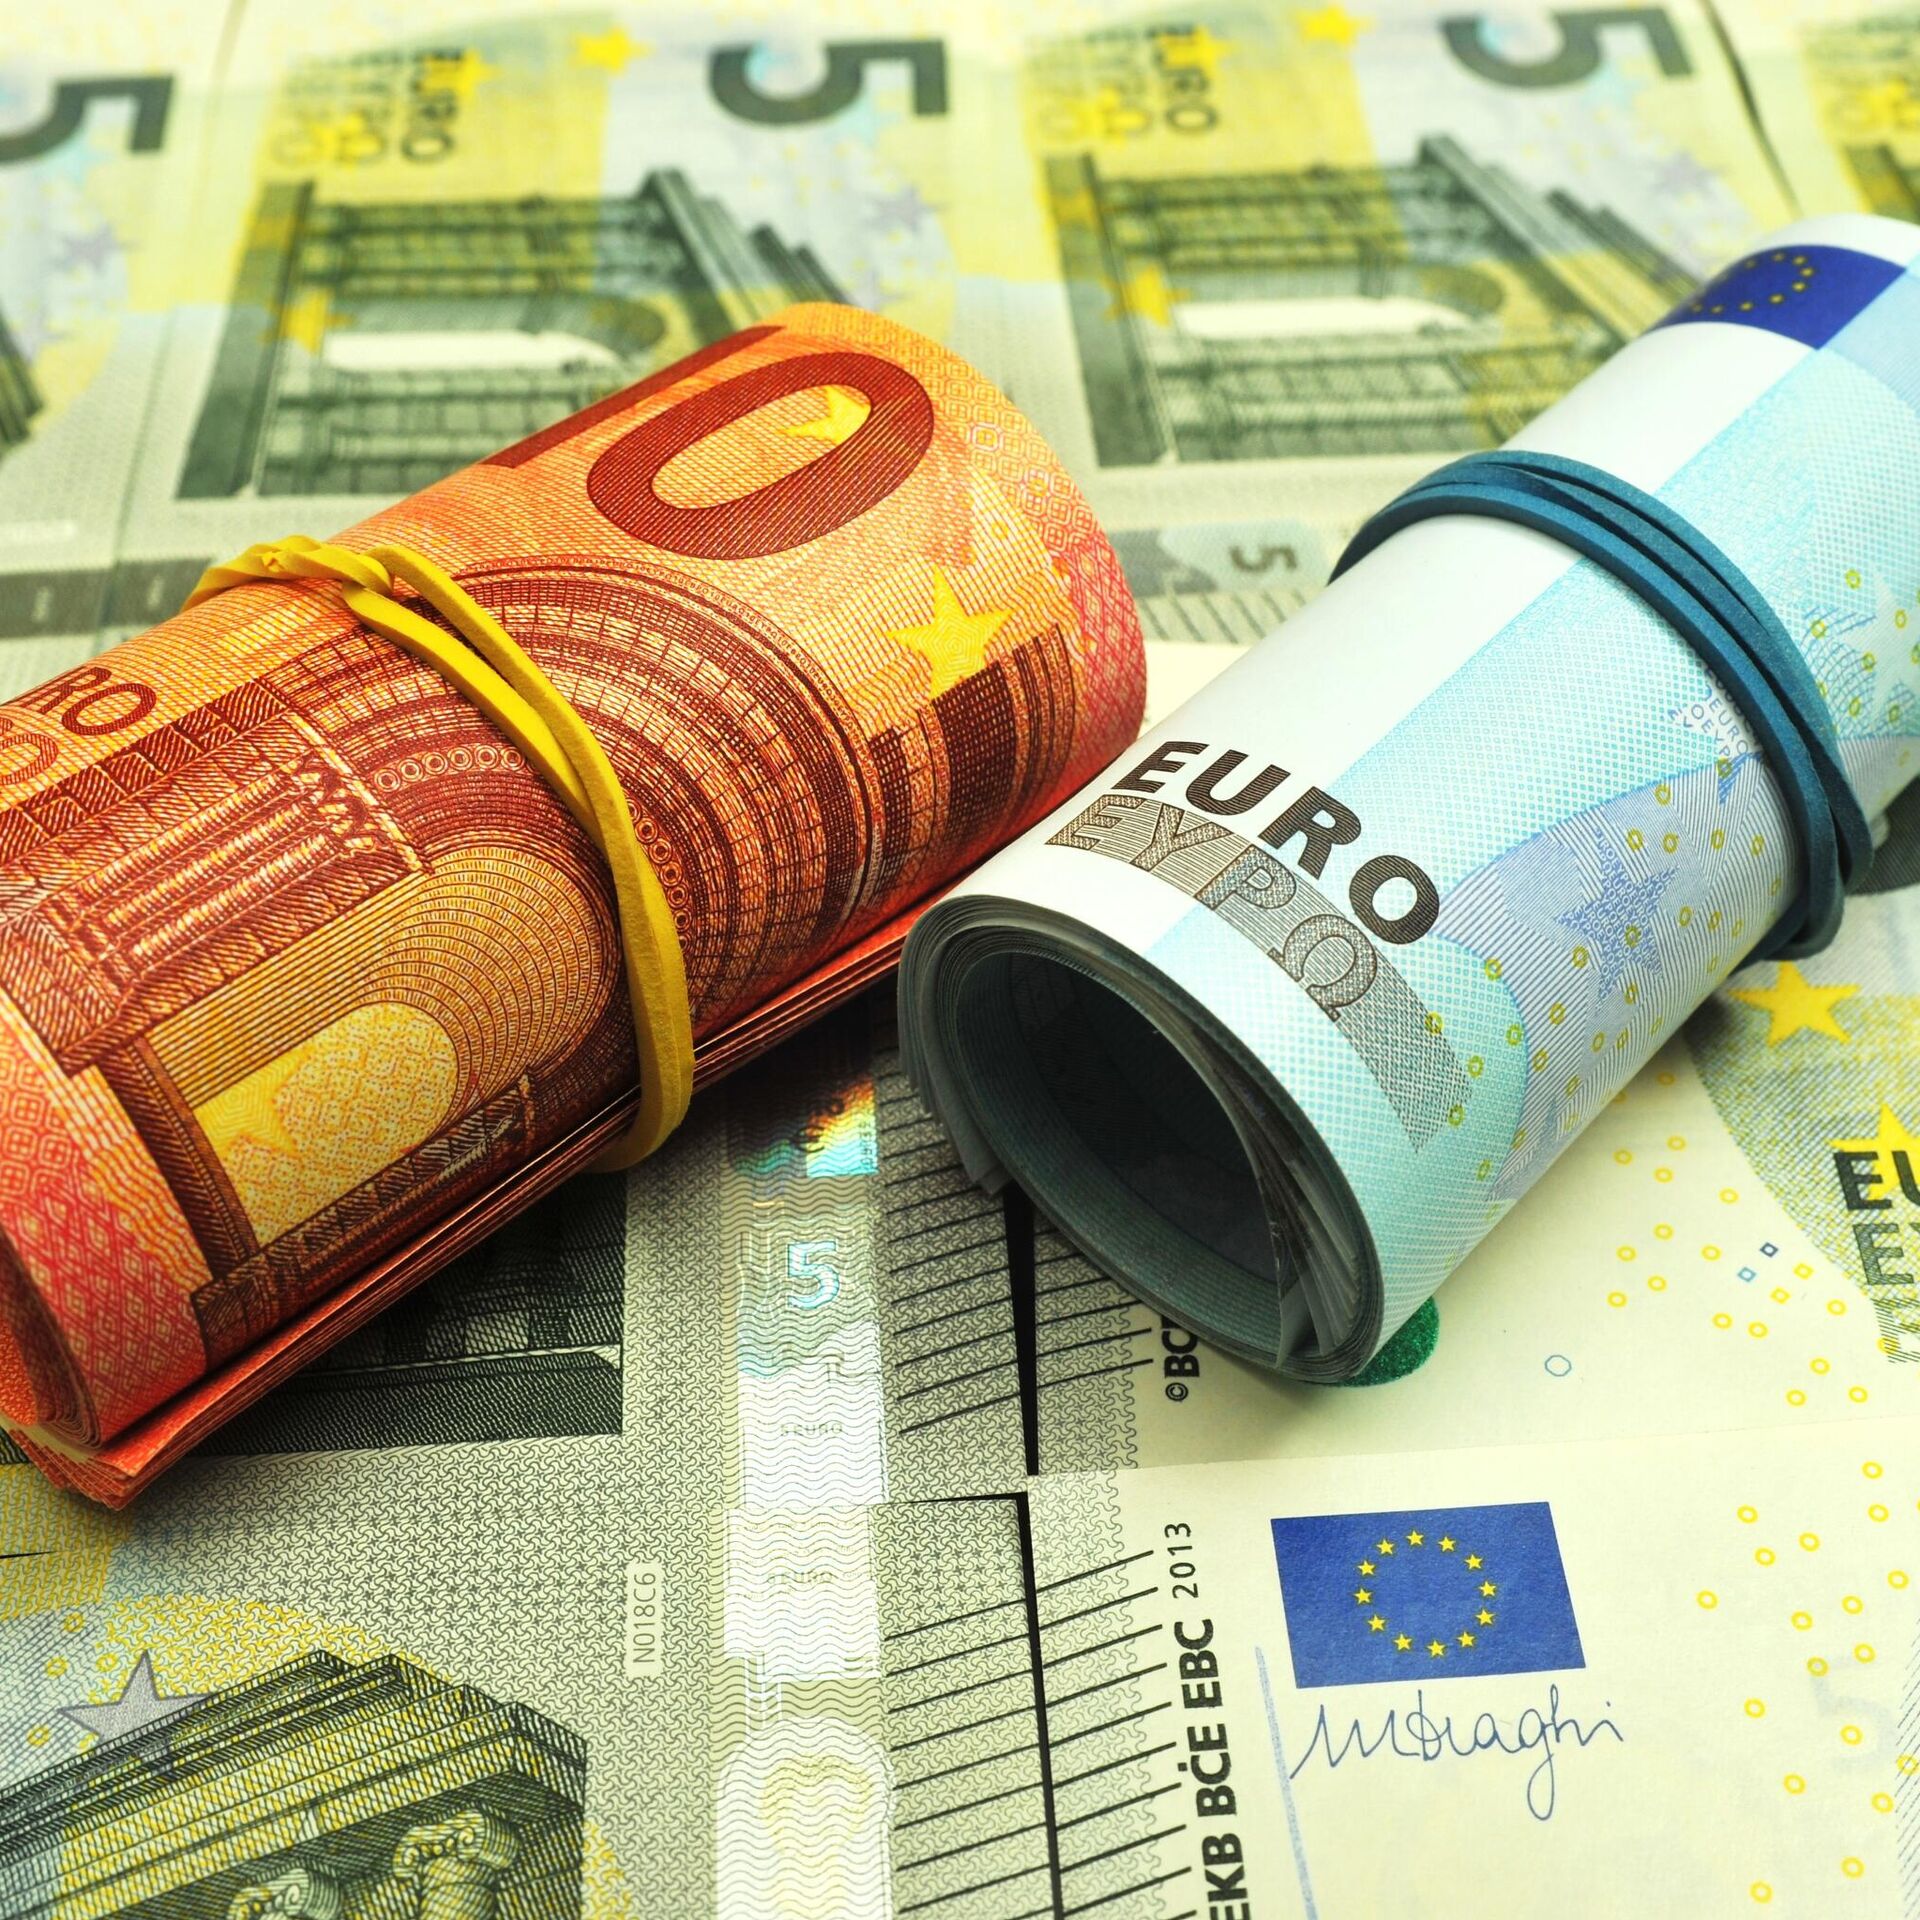 Покупка евро нижний. Евро в банках Курска. Чирпон цена на евро.